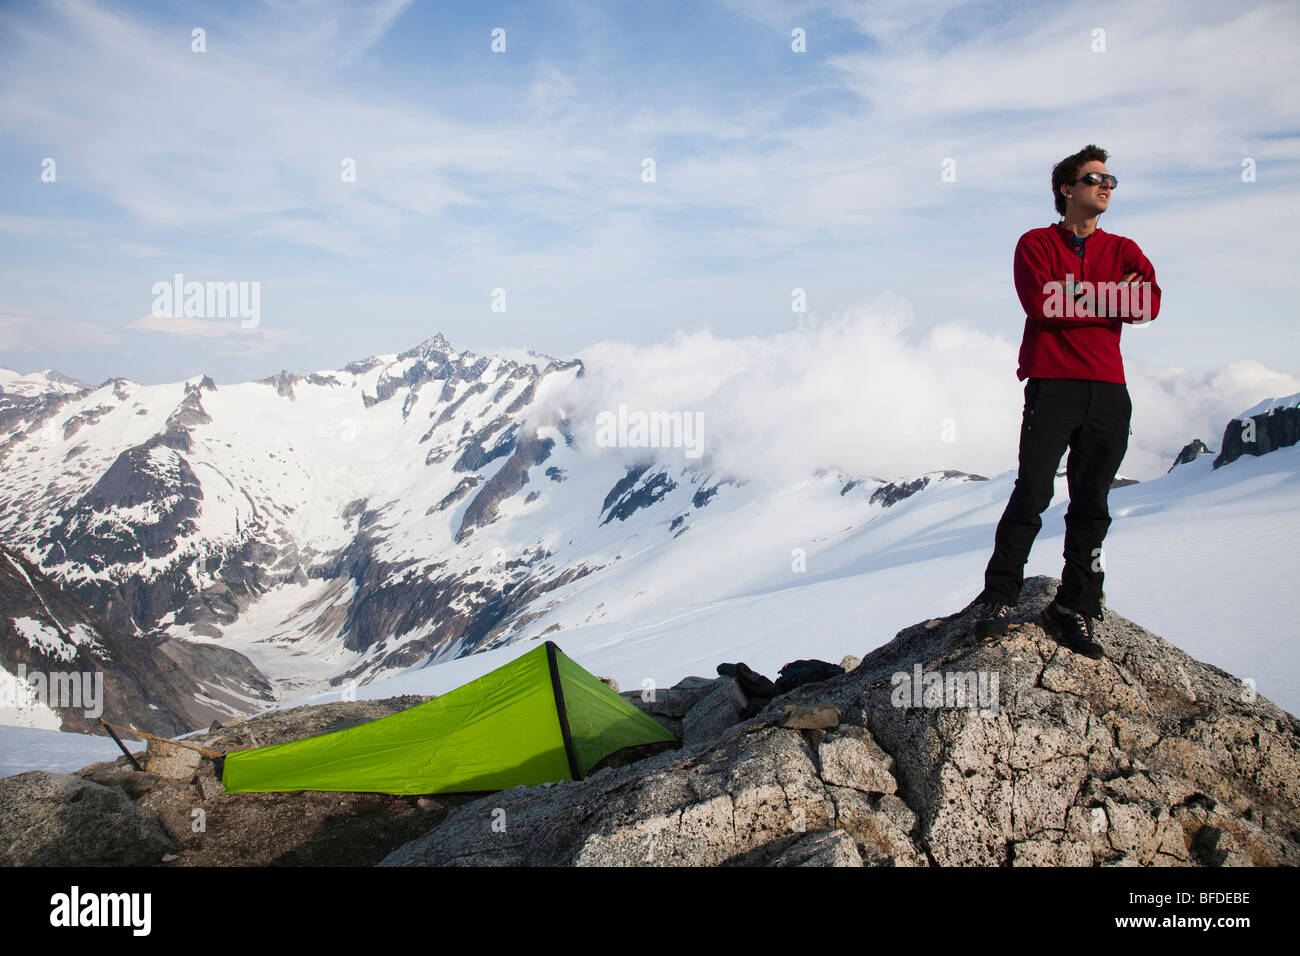 Un jeune grimpeur se dresse sur un affleurement rocheux près de sa tente pendant la montée sur un glacier dans les montagnes. Banque D'Images